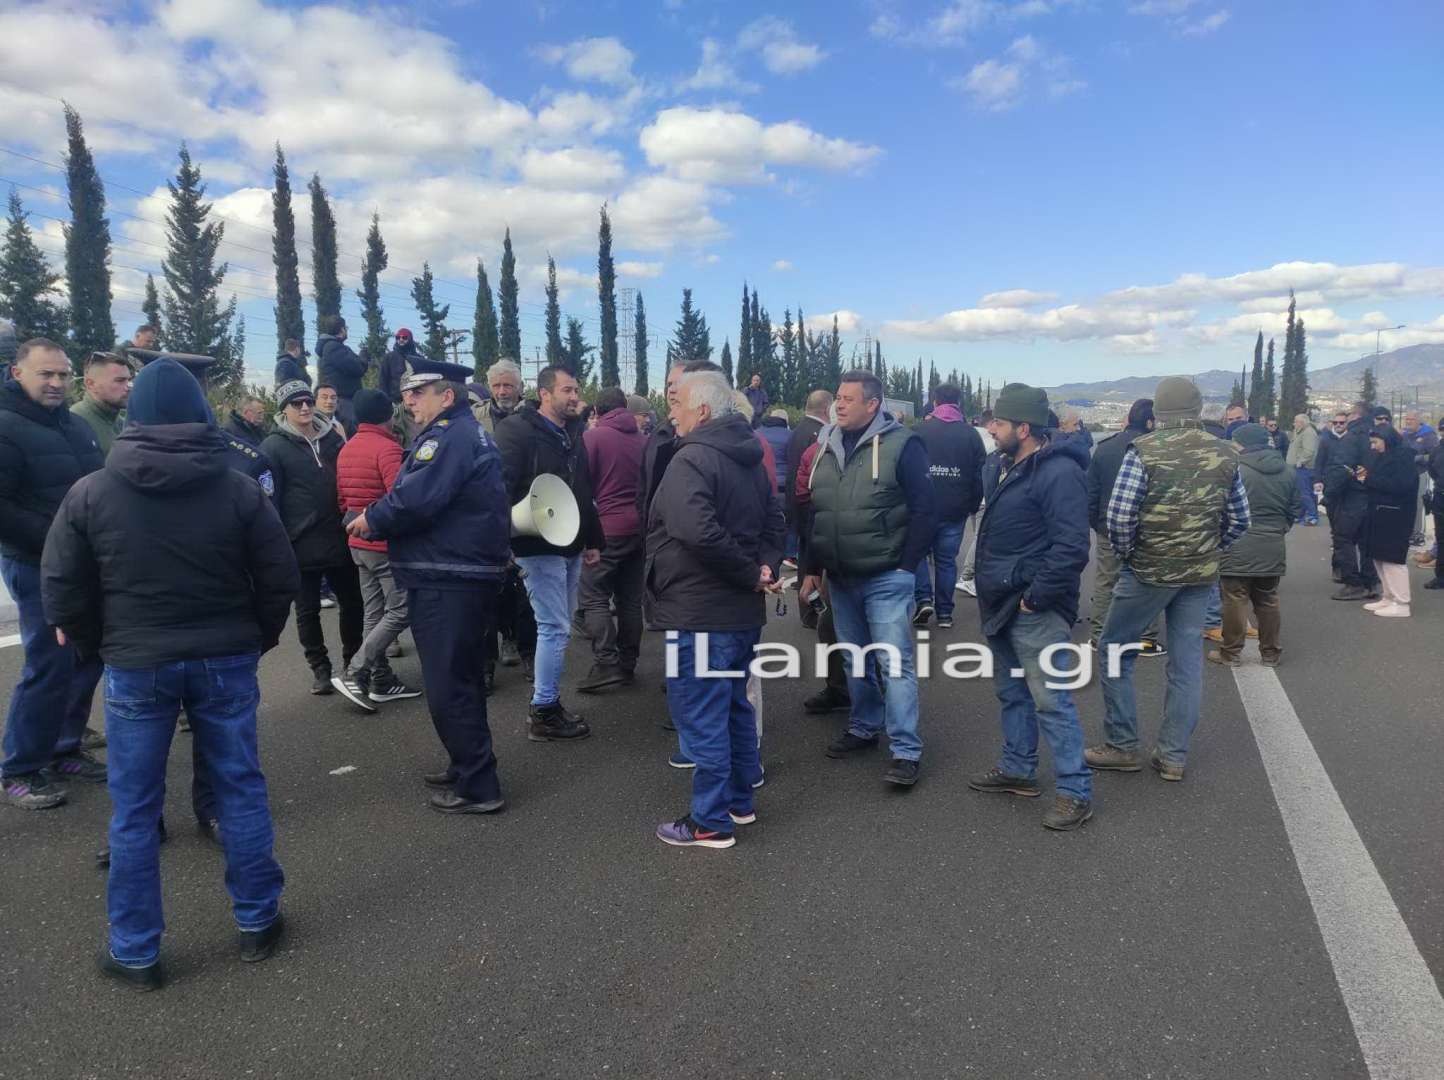 Κινητοποιήσεις αγροτών: Έκλεισαν συμβολικά την εθνική Αθηνών – Λαμίας, τρακτέρ στο κέντρο της Λάρισας